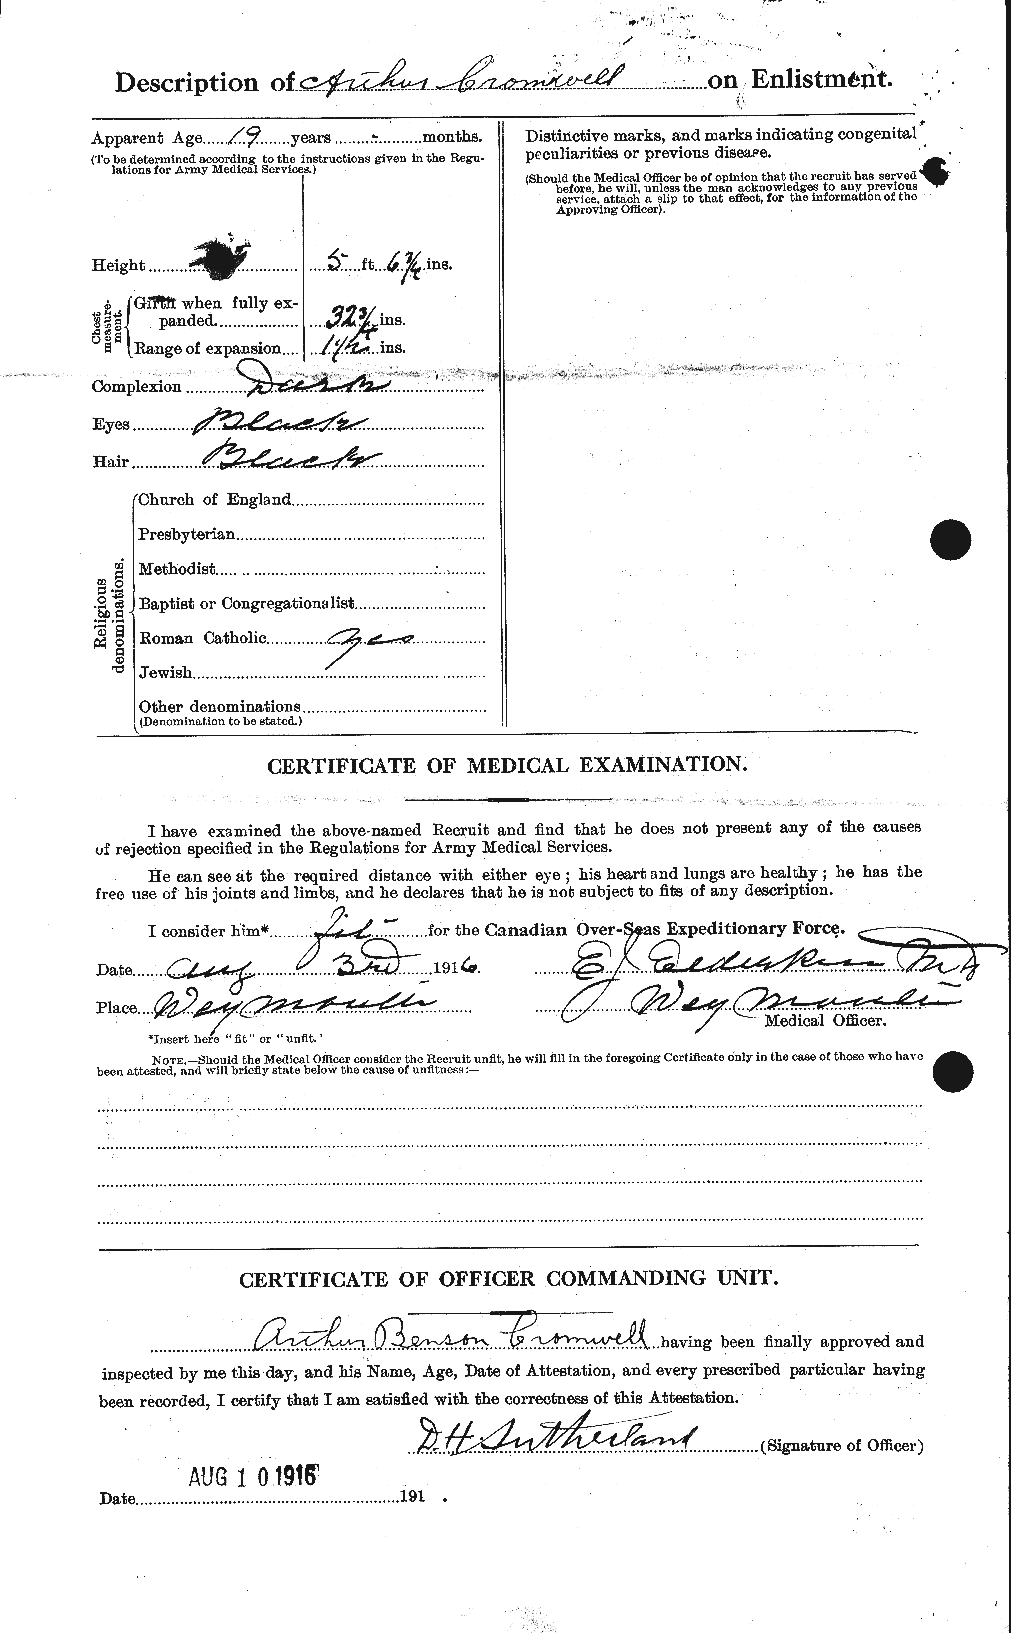 Dossiers du Personnel de la Première Guerre mondiale - CEC 064938b